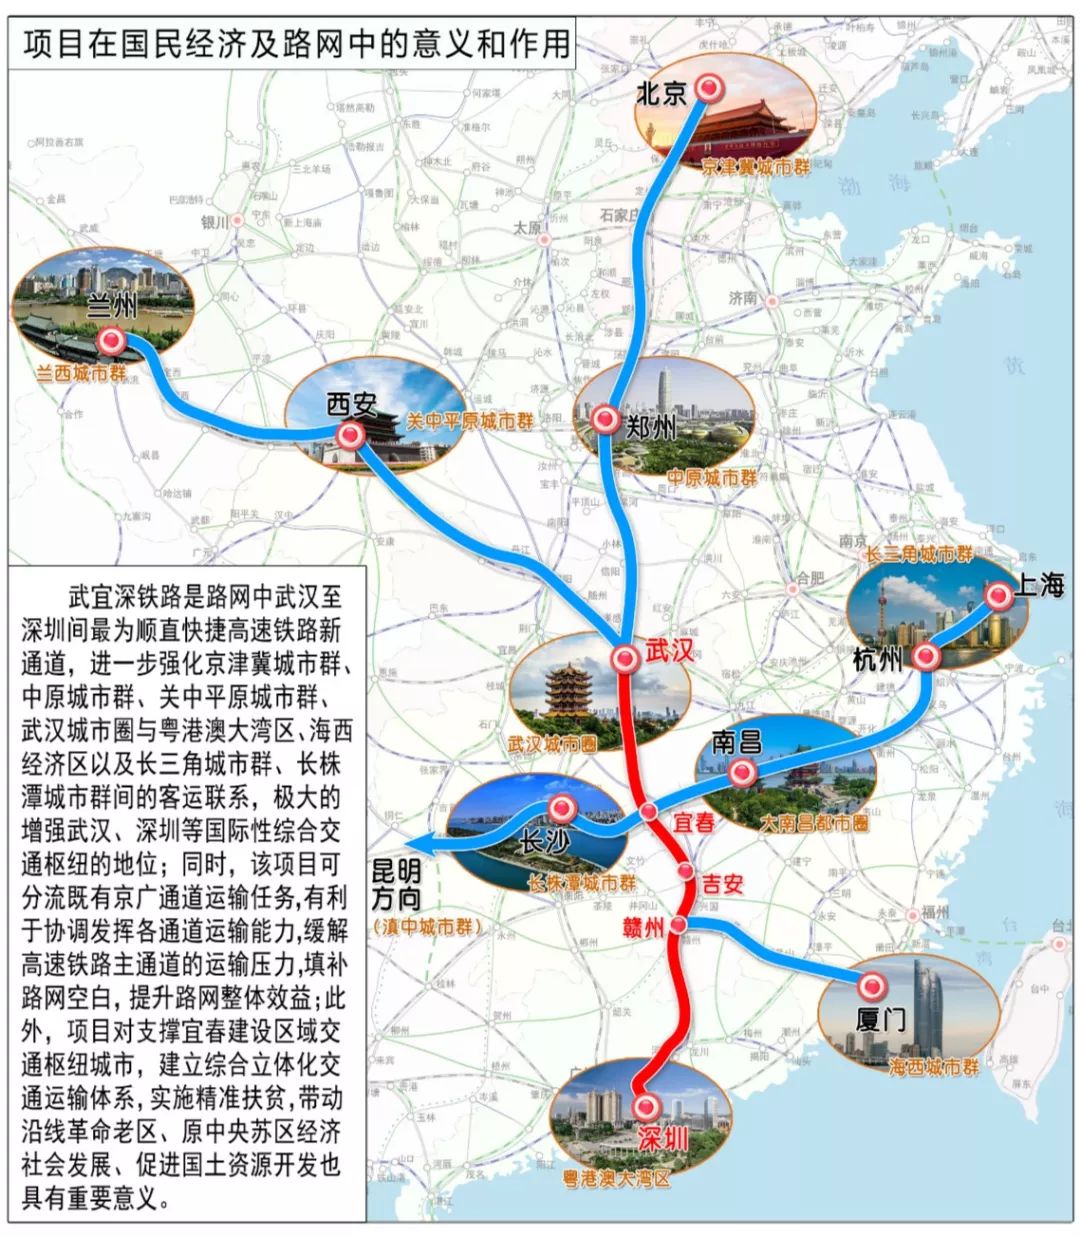 目前,宜春中心城区有赣西地区唯一的4c级民用航空机场,且正在规划明月